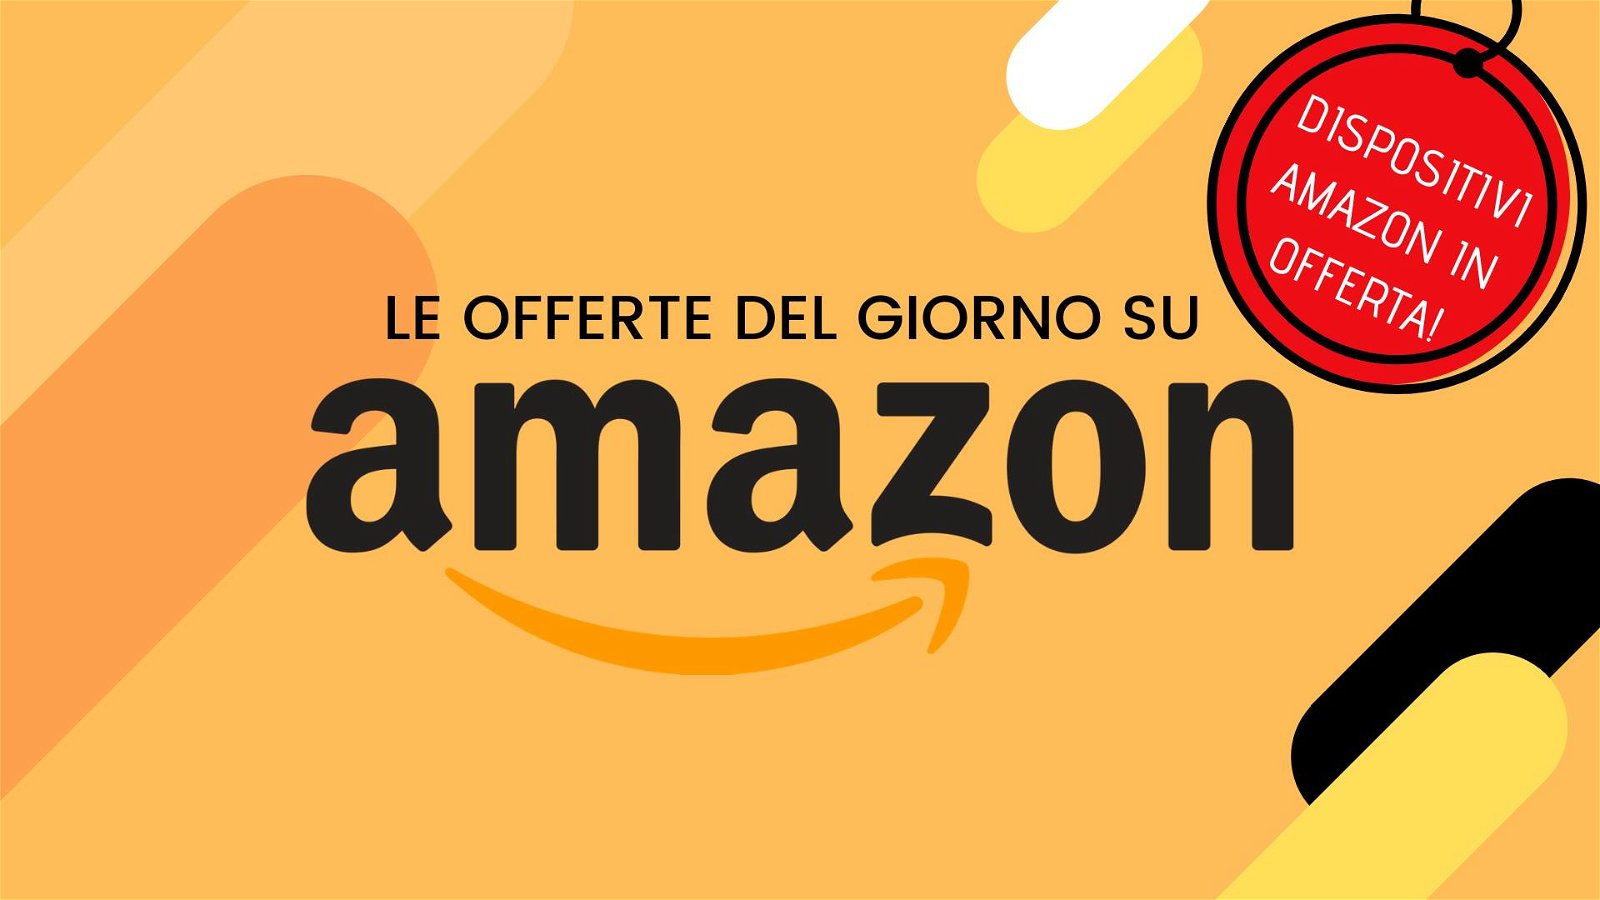 Immagine di Offerte del giorno Amazon: promozioni sui dispositivi Amazon